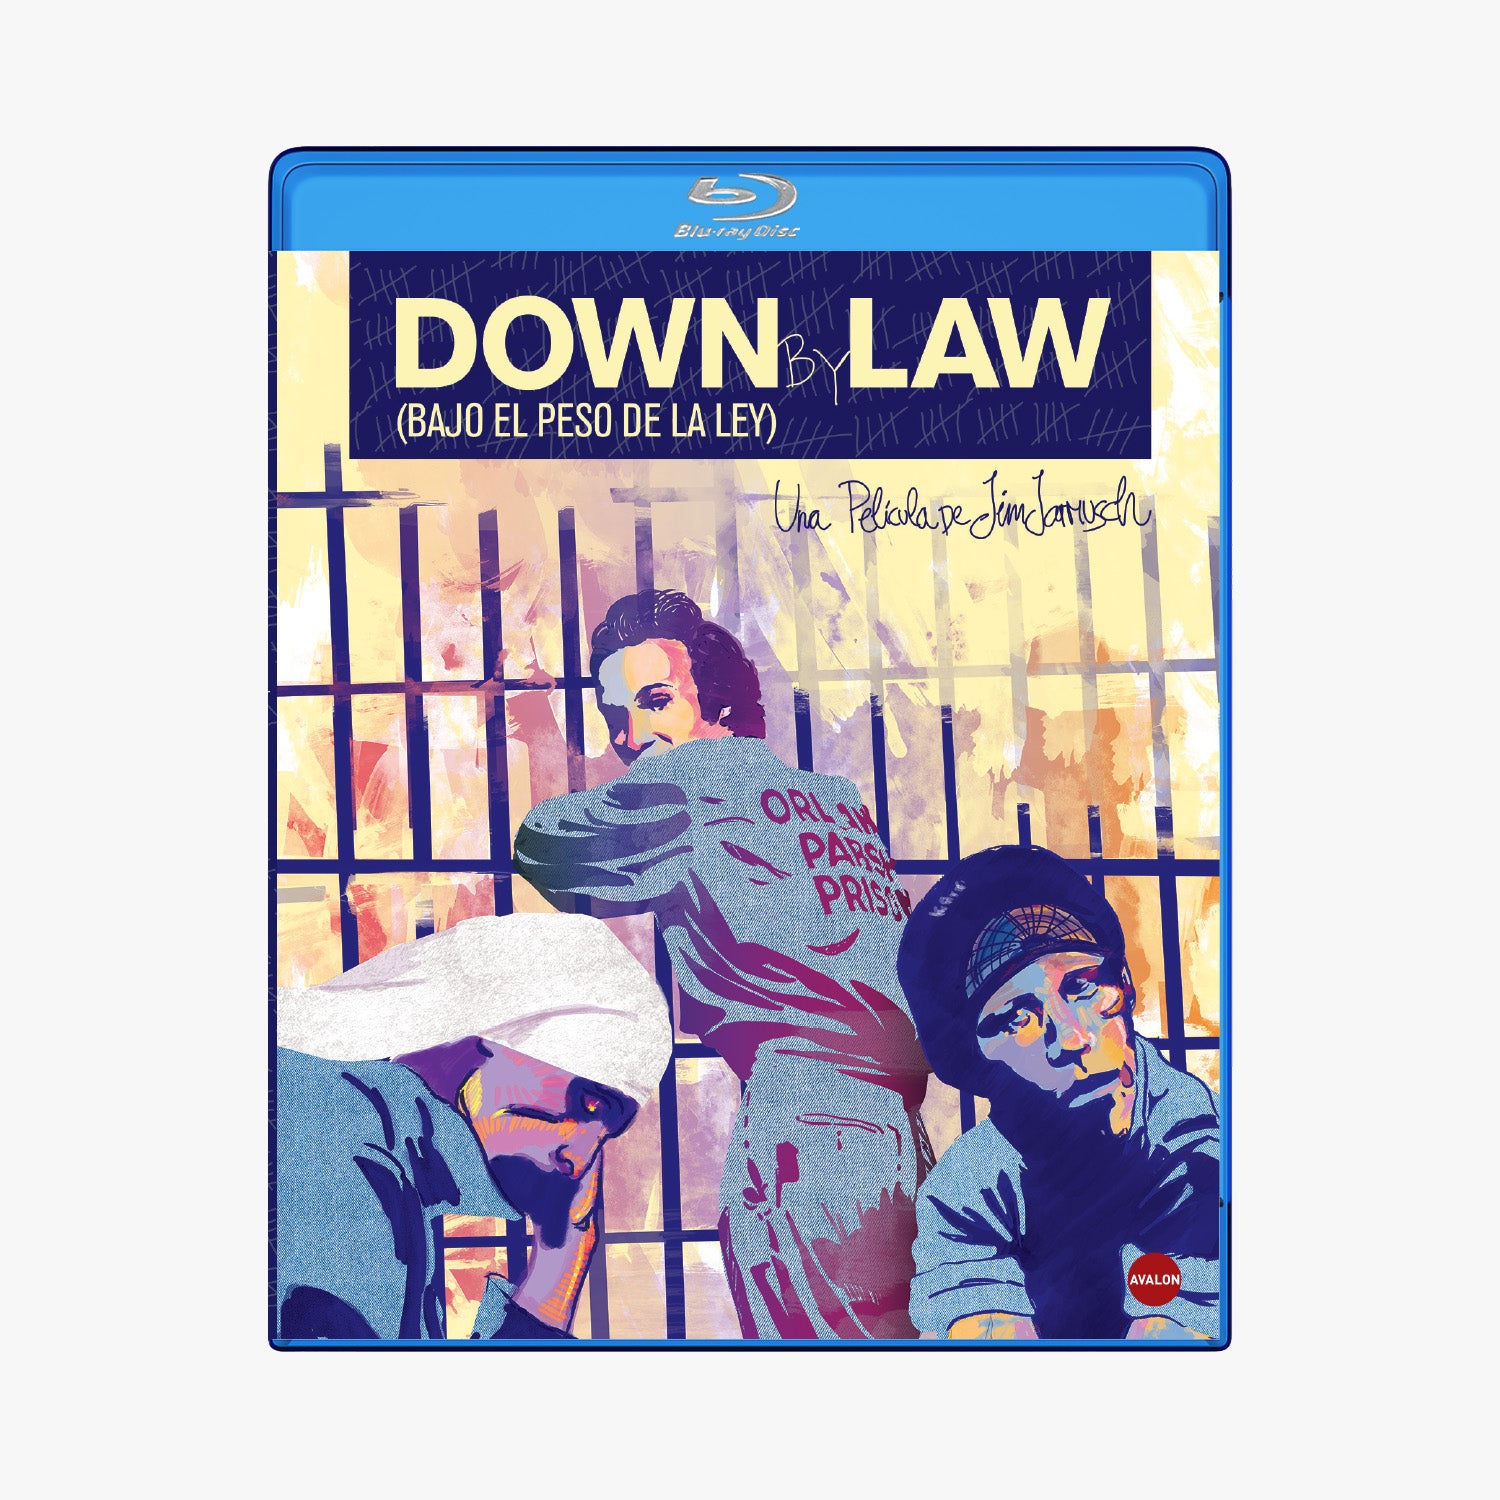 Down by Law (Bajo el peso de la ley), Blu-ray